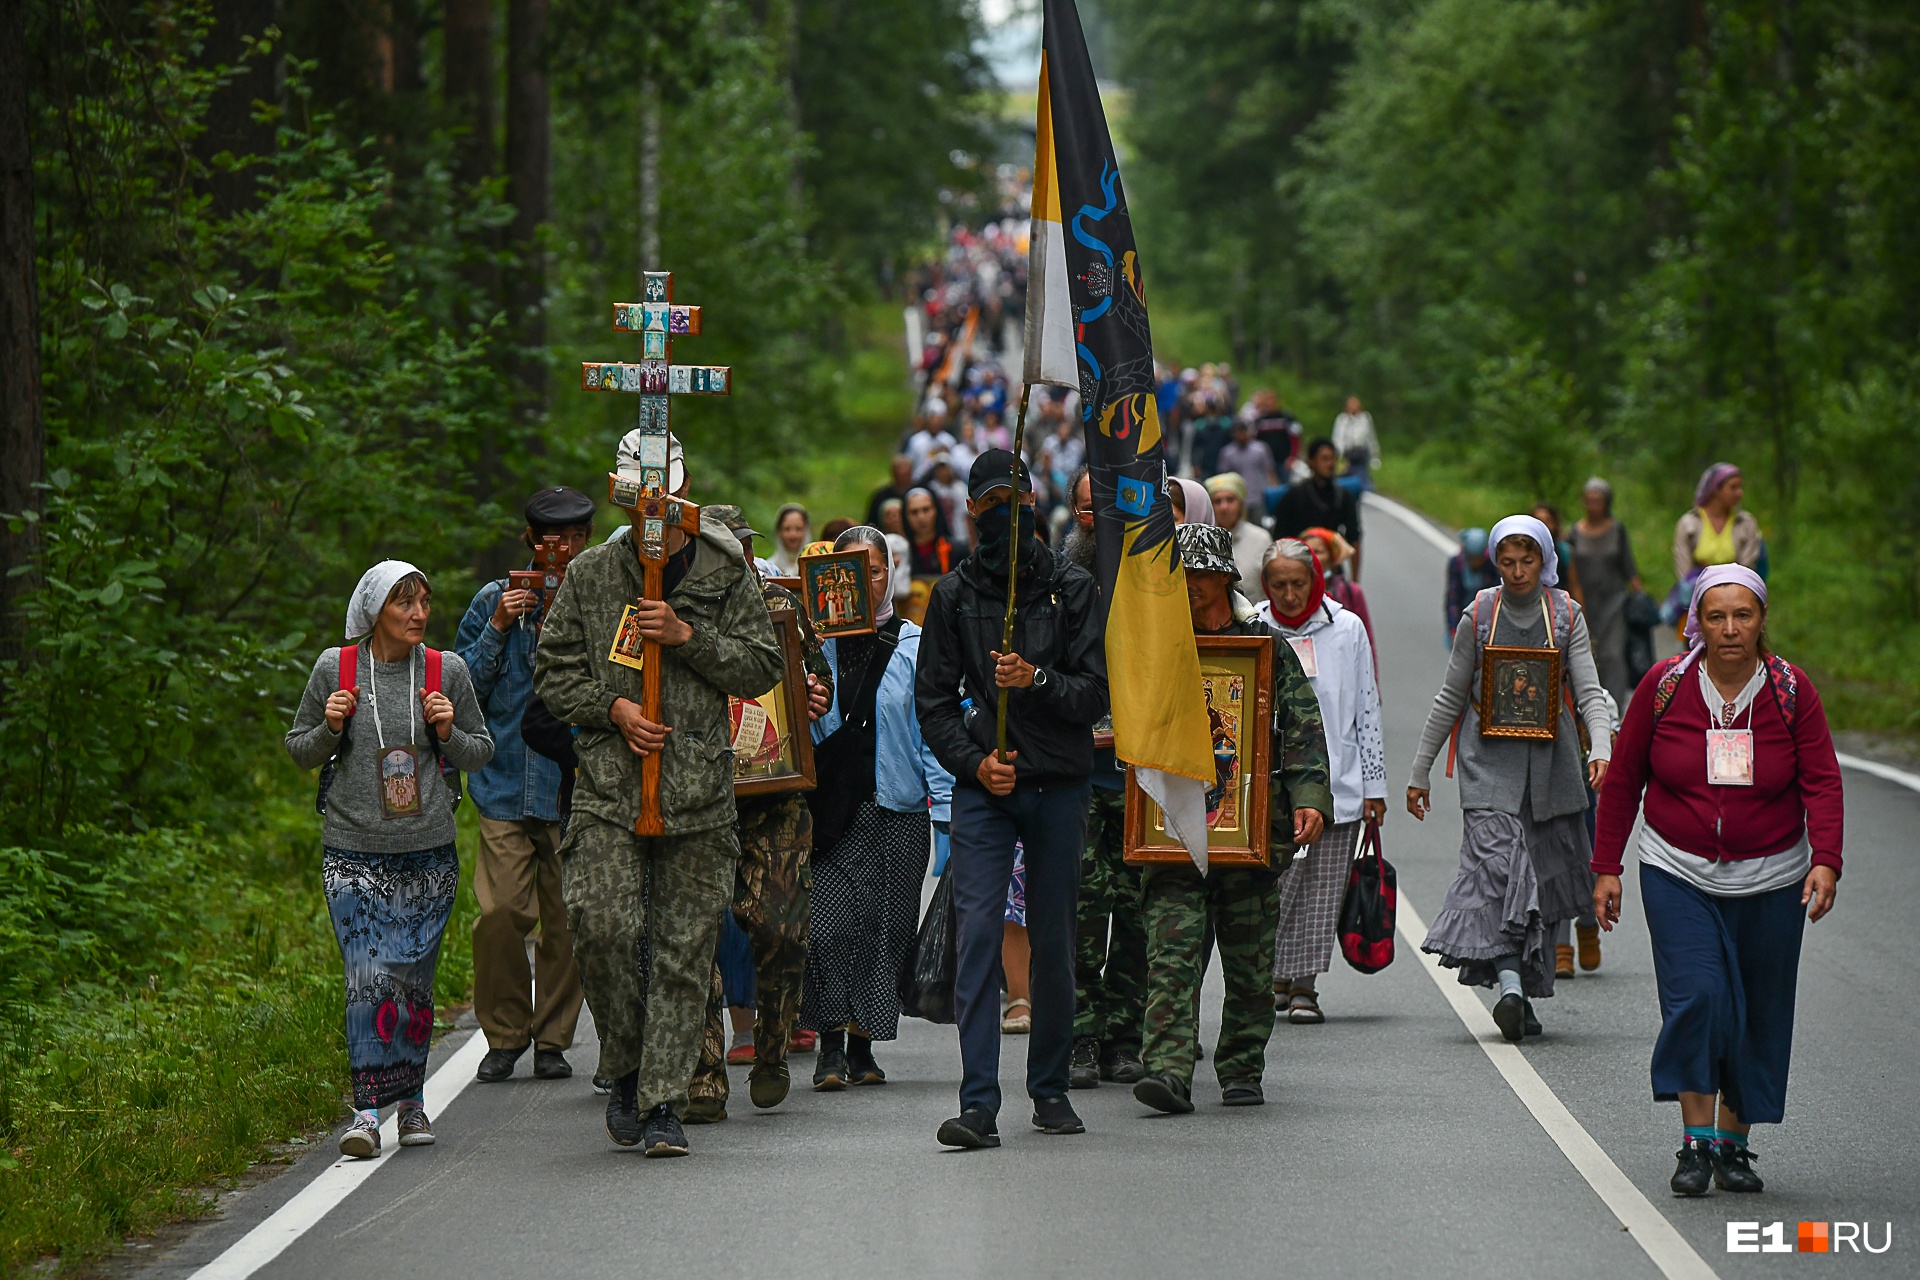 Тысячи паломников пять часов шли по Екатеринбургу с крестами и флагами